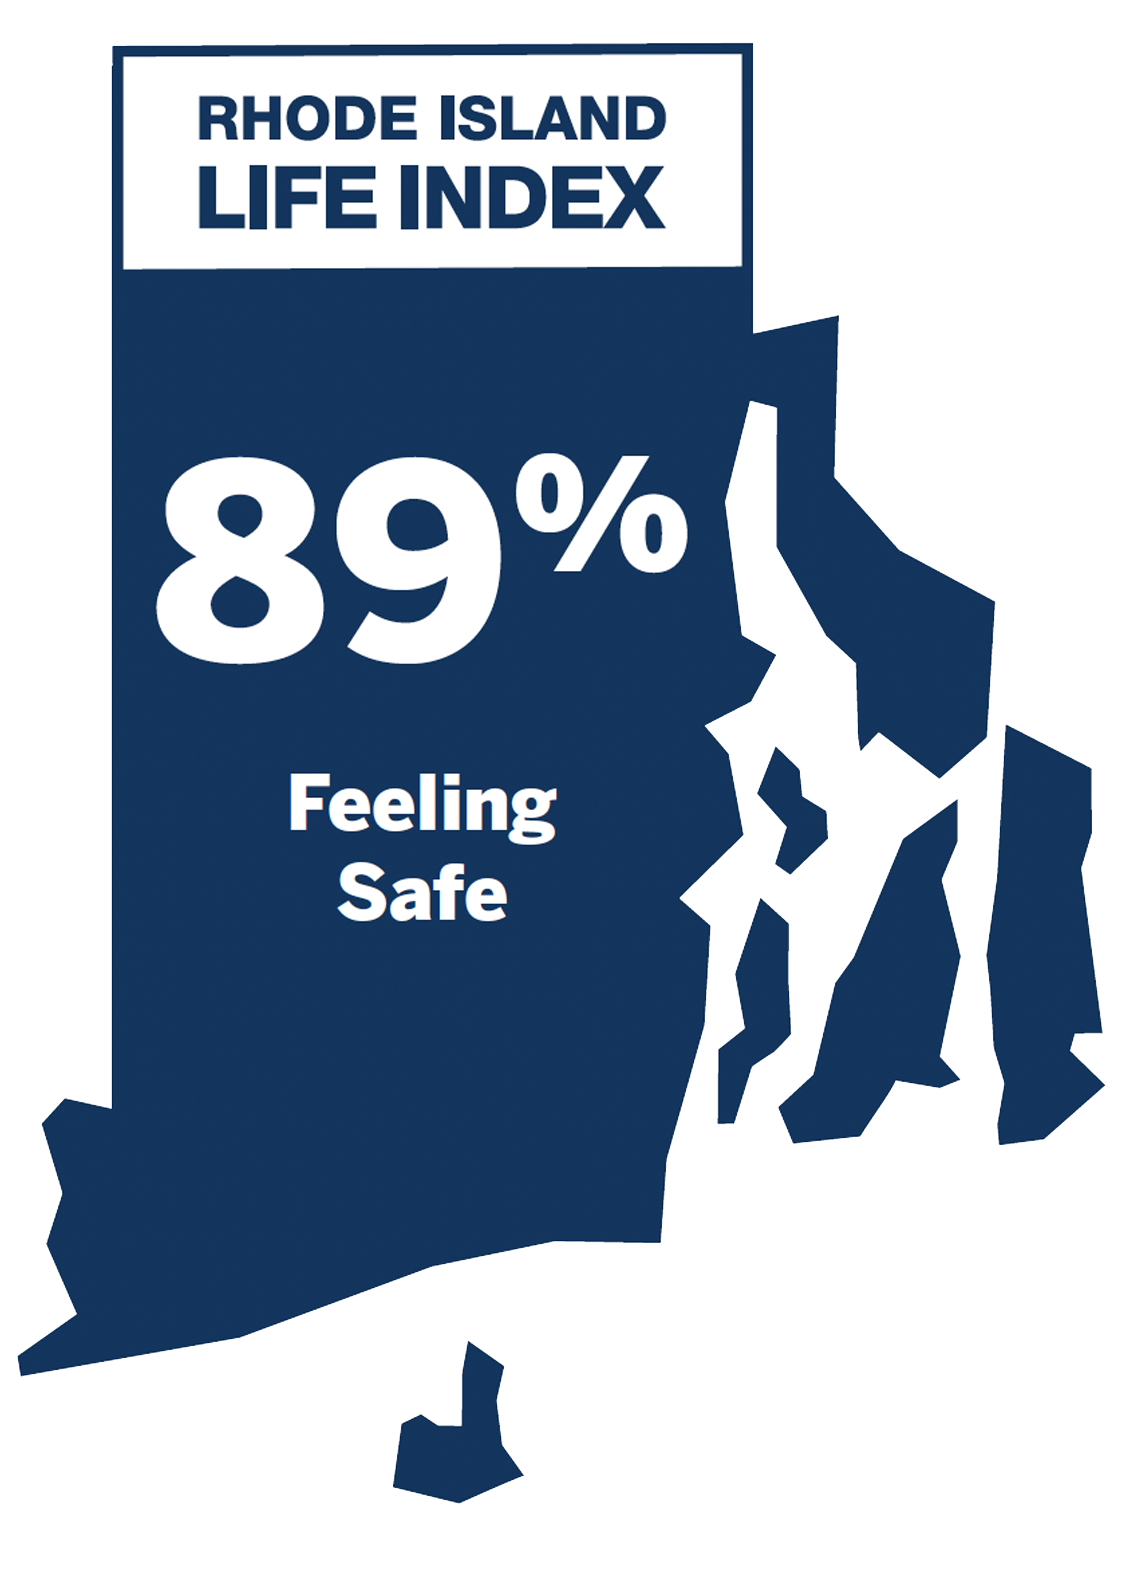 Feeling Safe: 89%